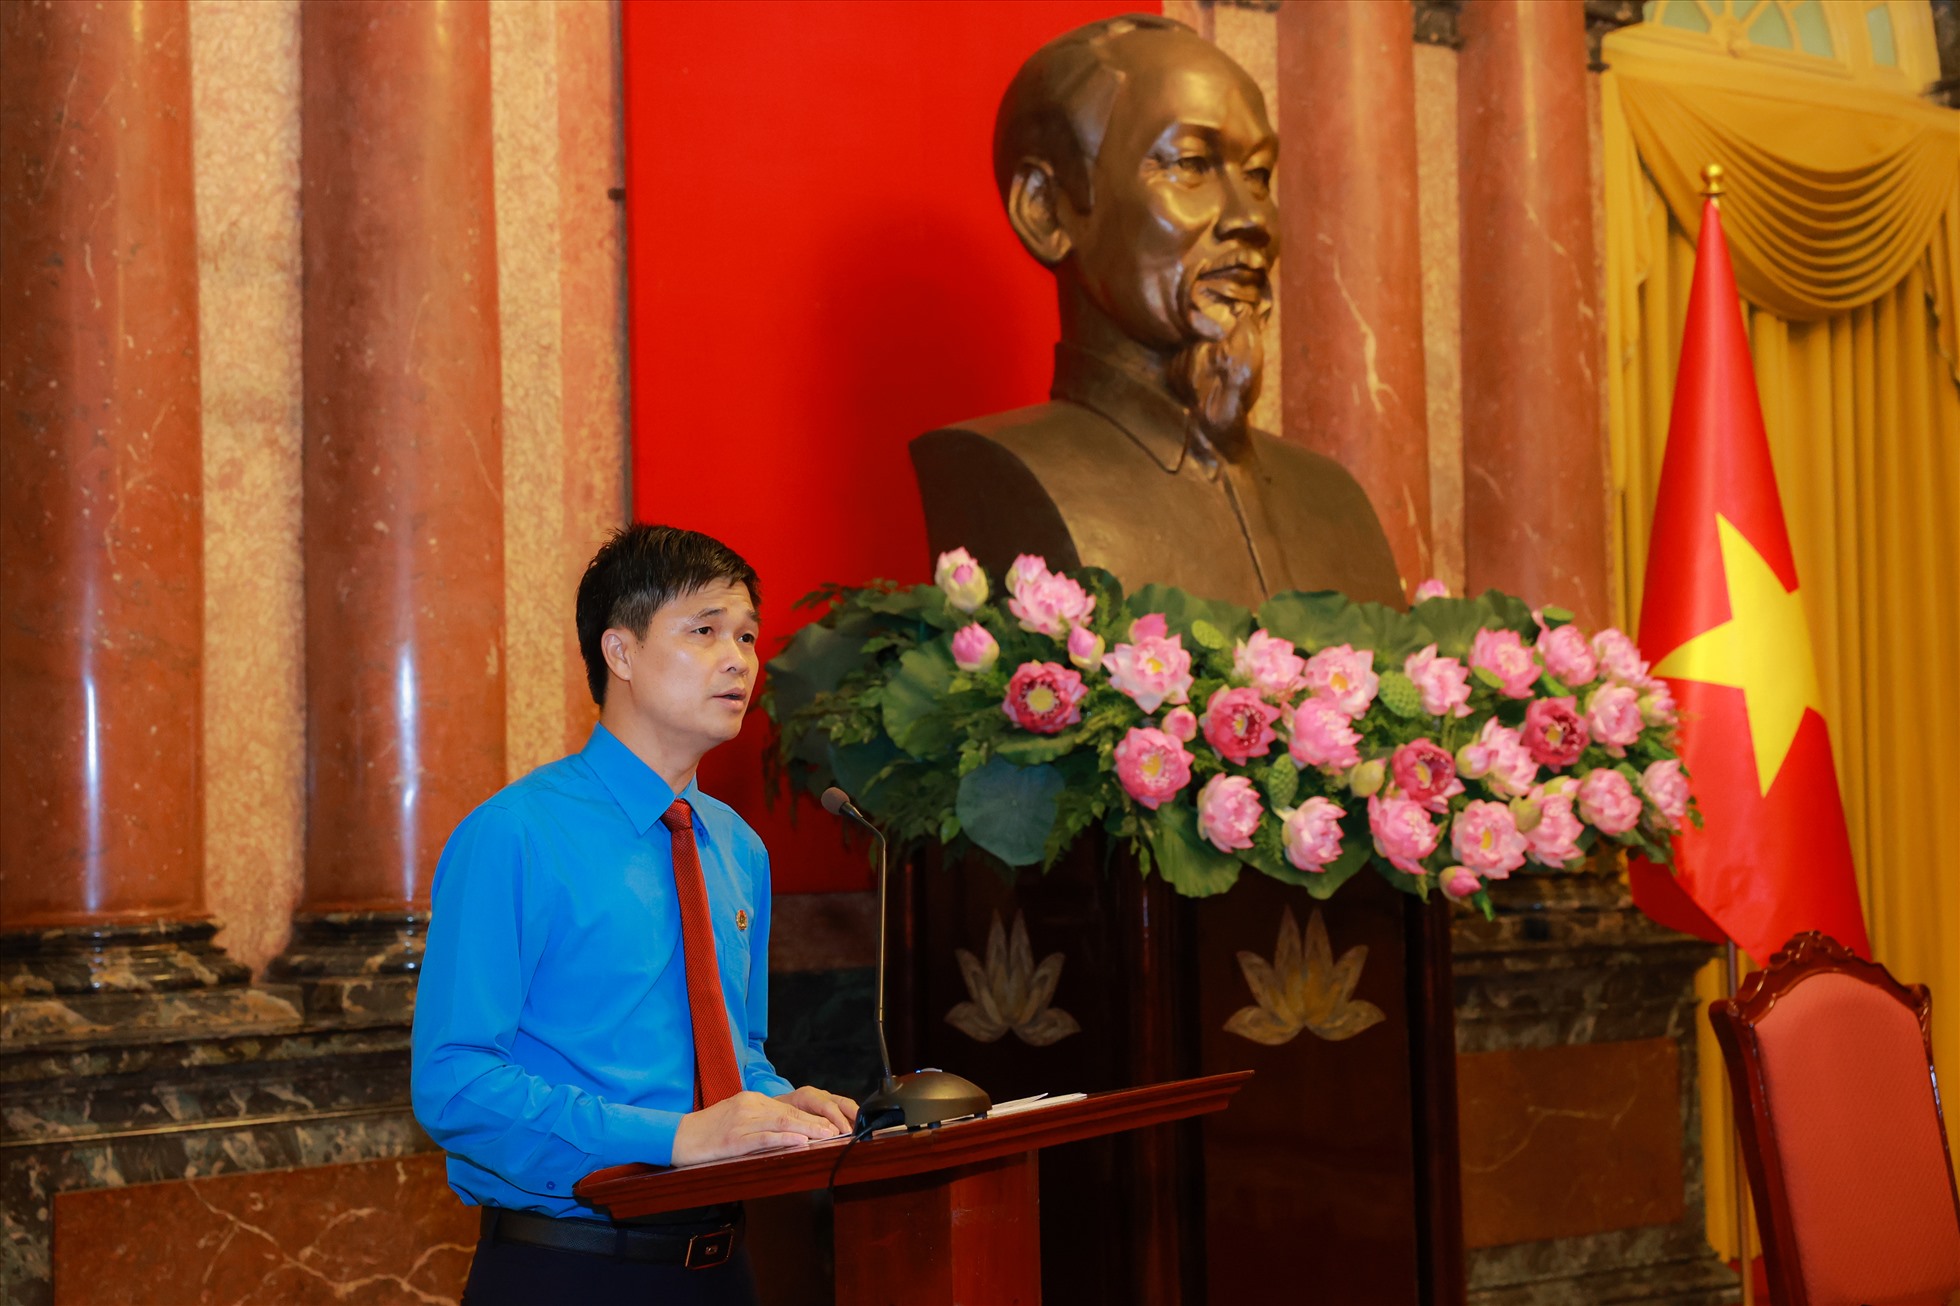 Phó Chủ tịch Tổng Liên đoàn Lao động Việt Nam Ngọ Duy Hiểu báo cáo với Chủ tịch nước một số kết quả nổi bật của các cấp công đoàn trong thực hiện Kết luận số 01-KL/TW và Chỉ thị số 05-CT/TW. Ảnh: Hải Nguyễn